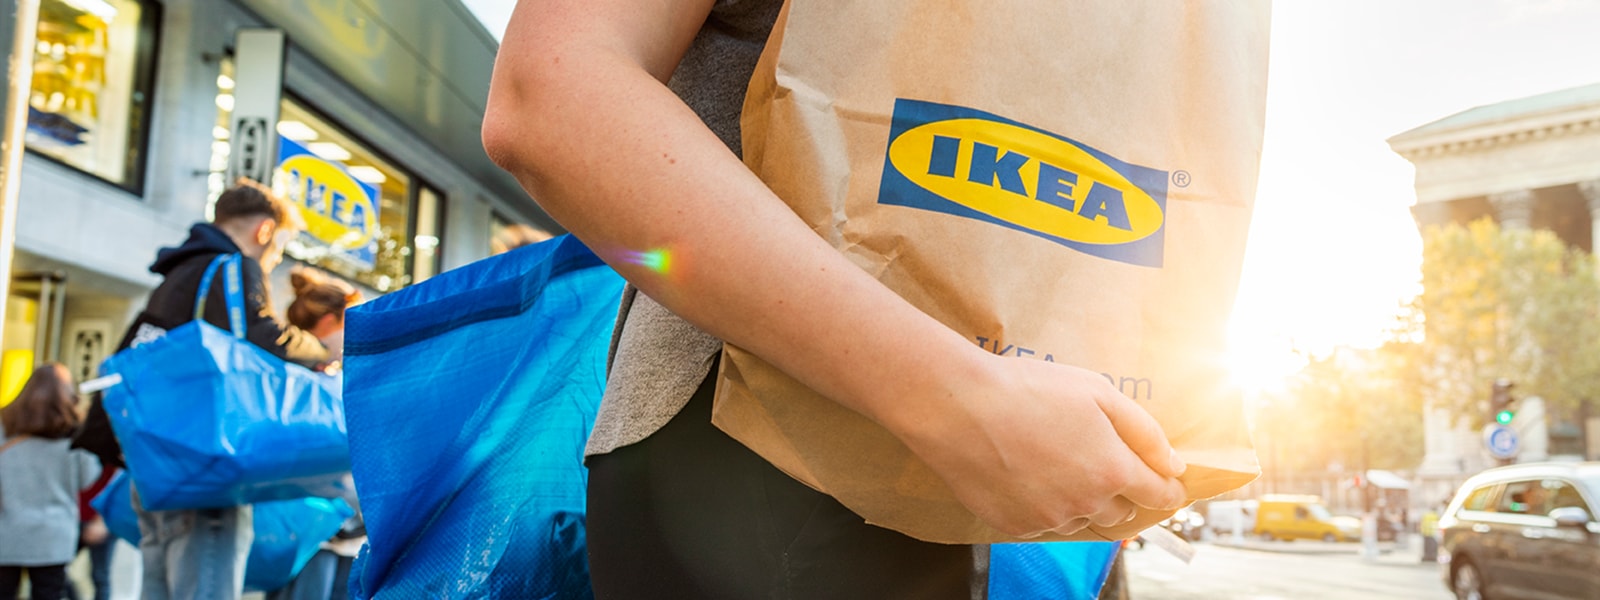 Mensch mit Ikea Papiertüte auf dem Arm.